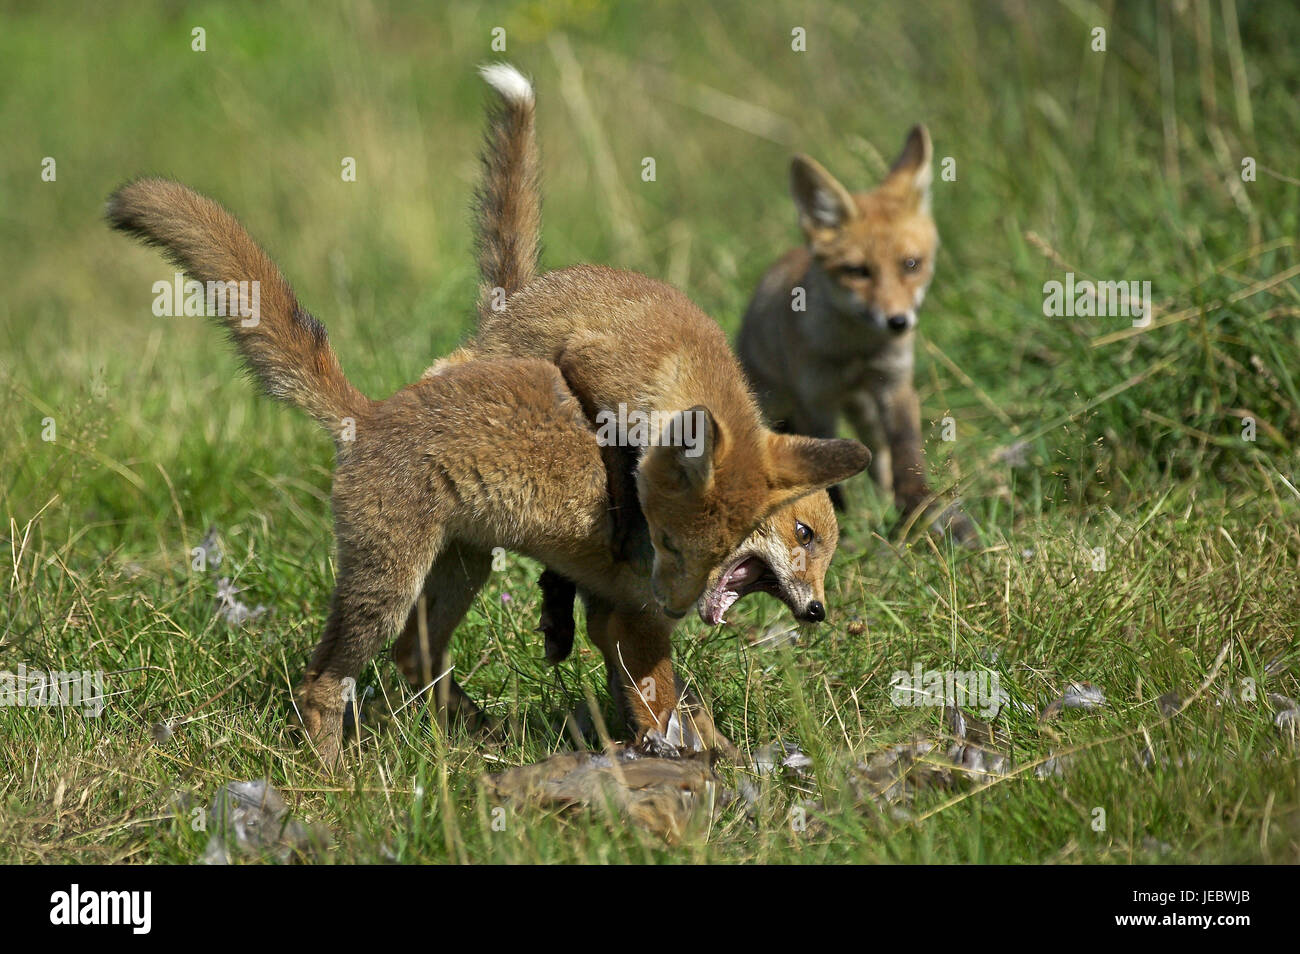 Dos zorros, Vulpes vulpes, los animales jóvenes, luchar, Foto de stock